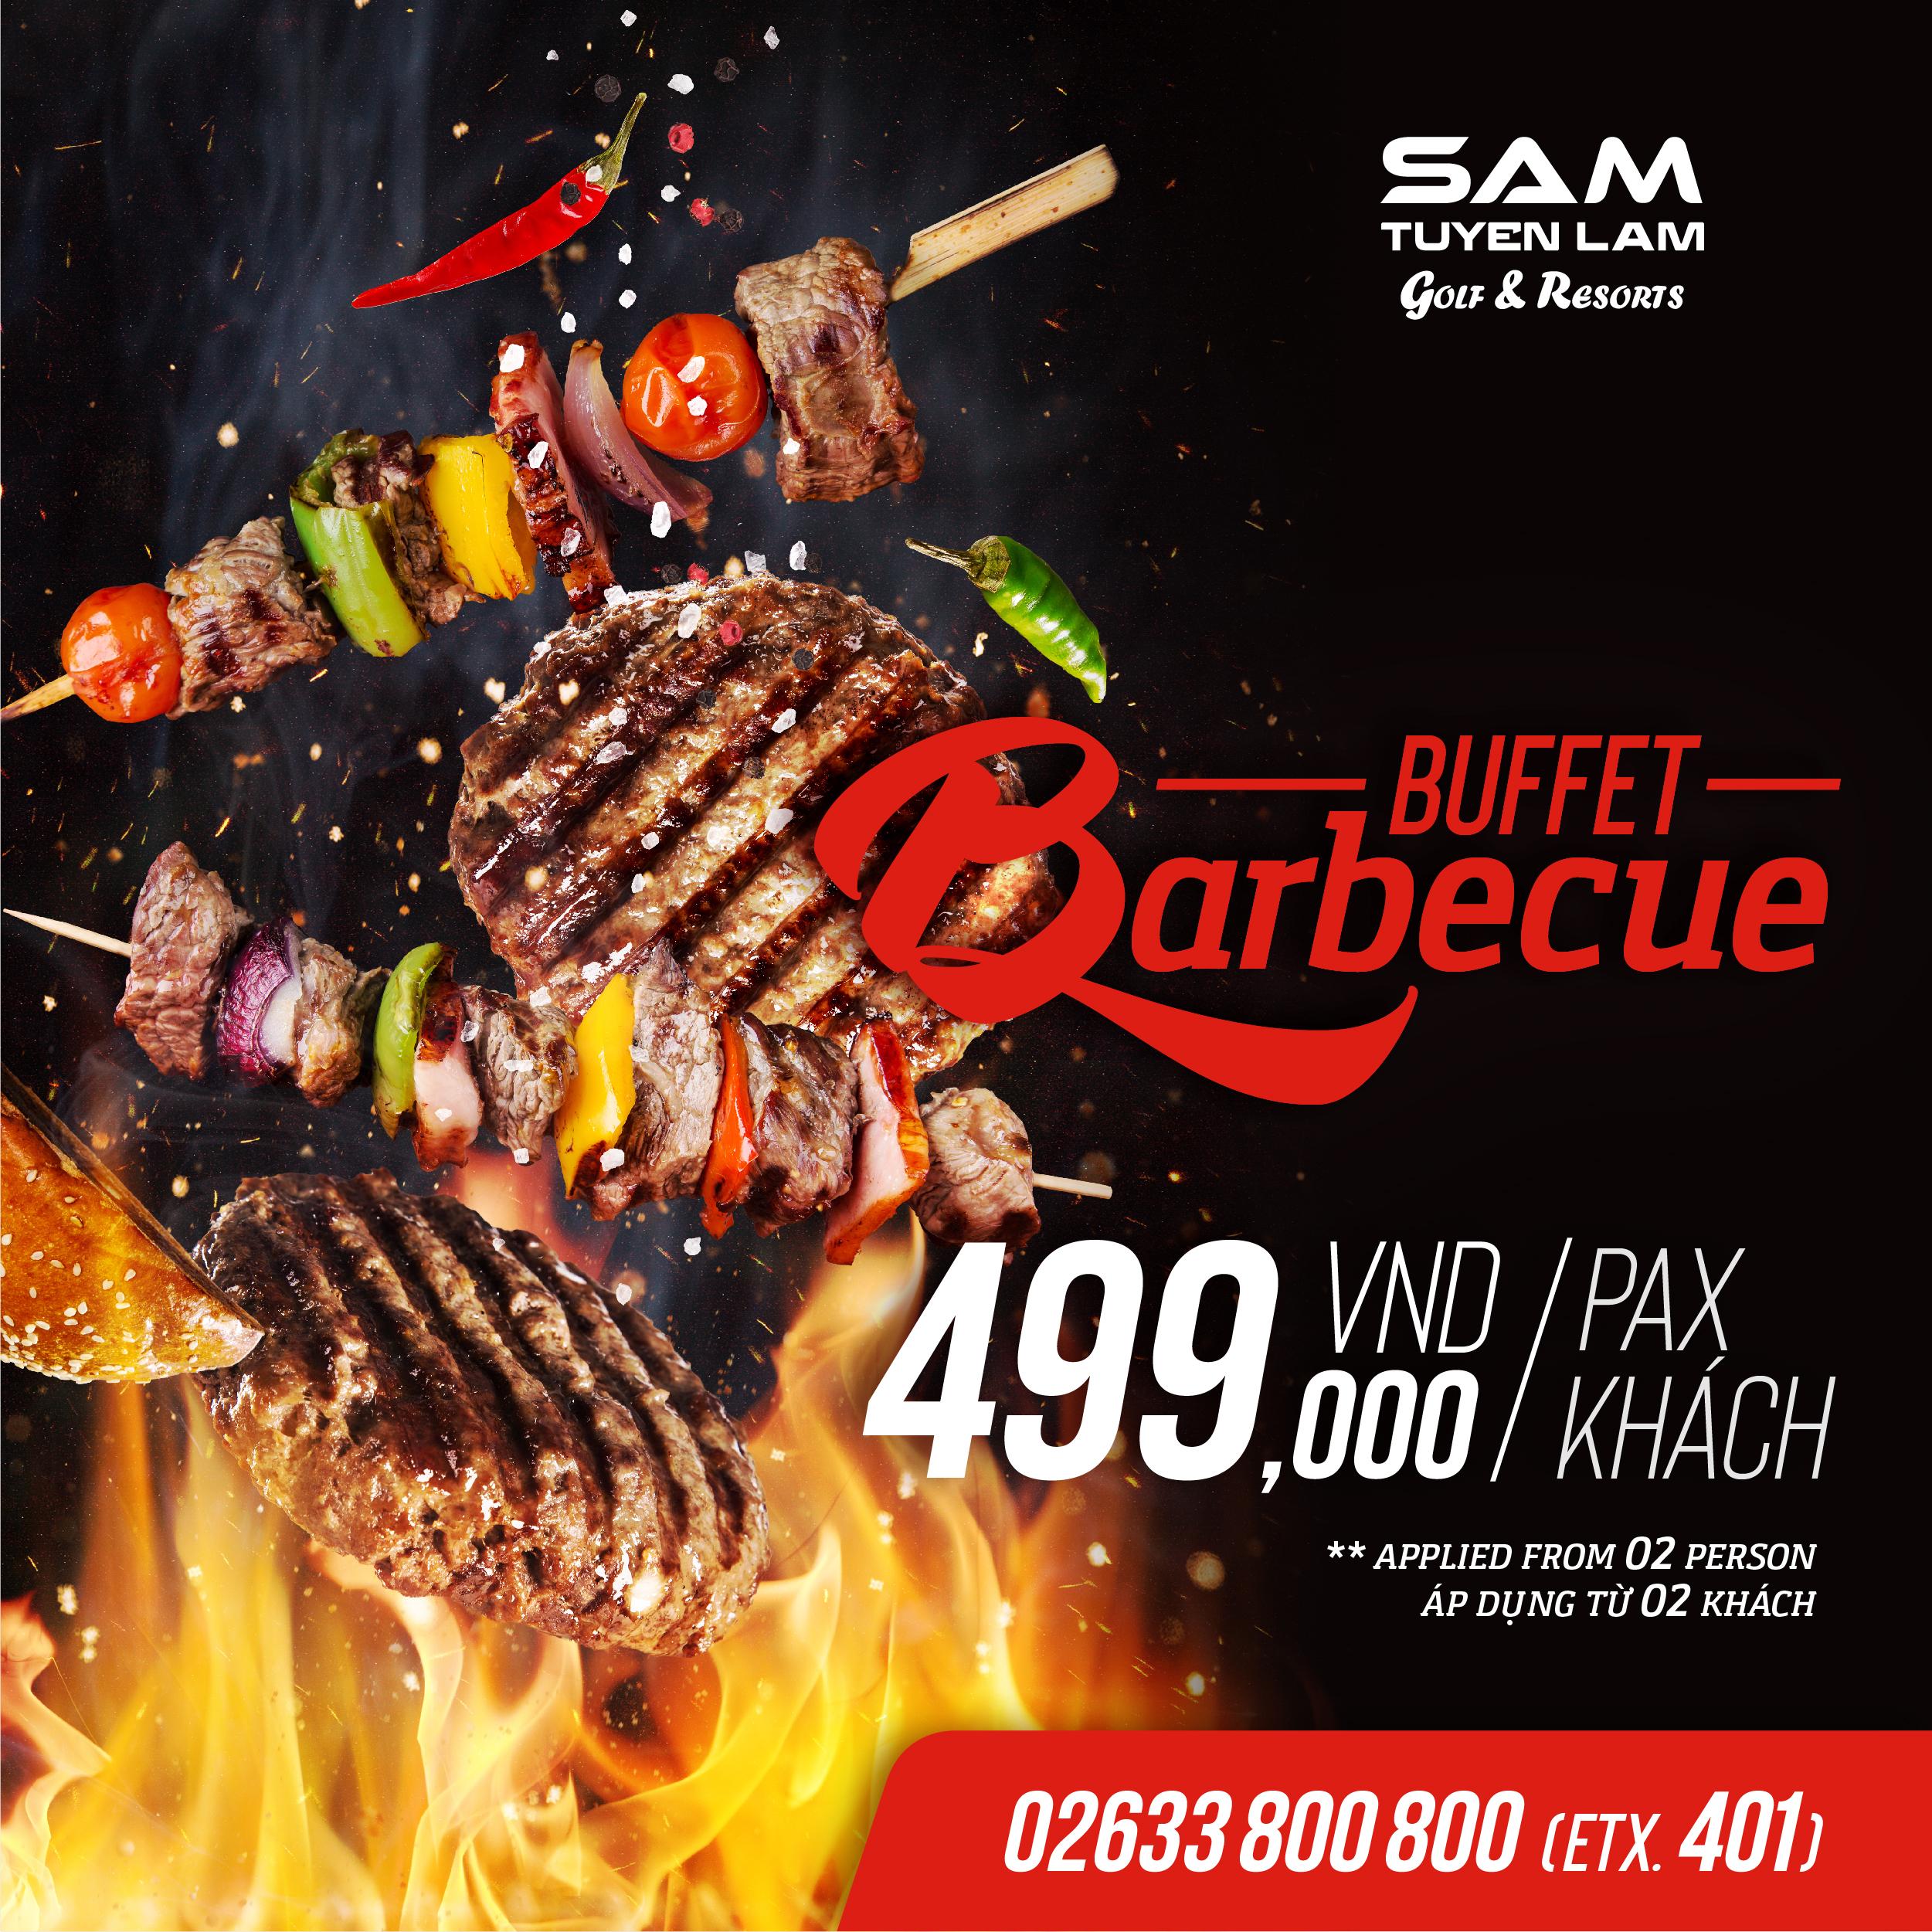 (Tiếng Việt) Buffet Barbecue – Bữa tiệc cho mọi người